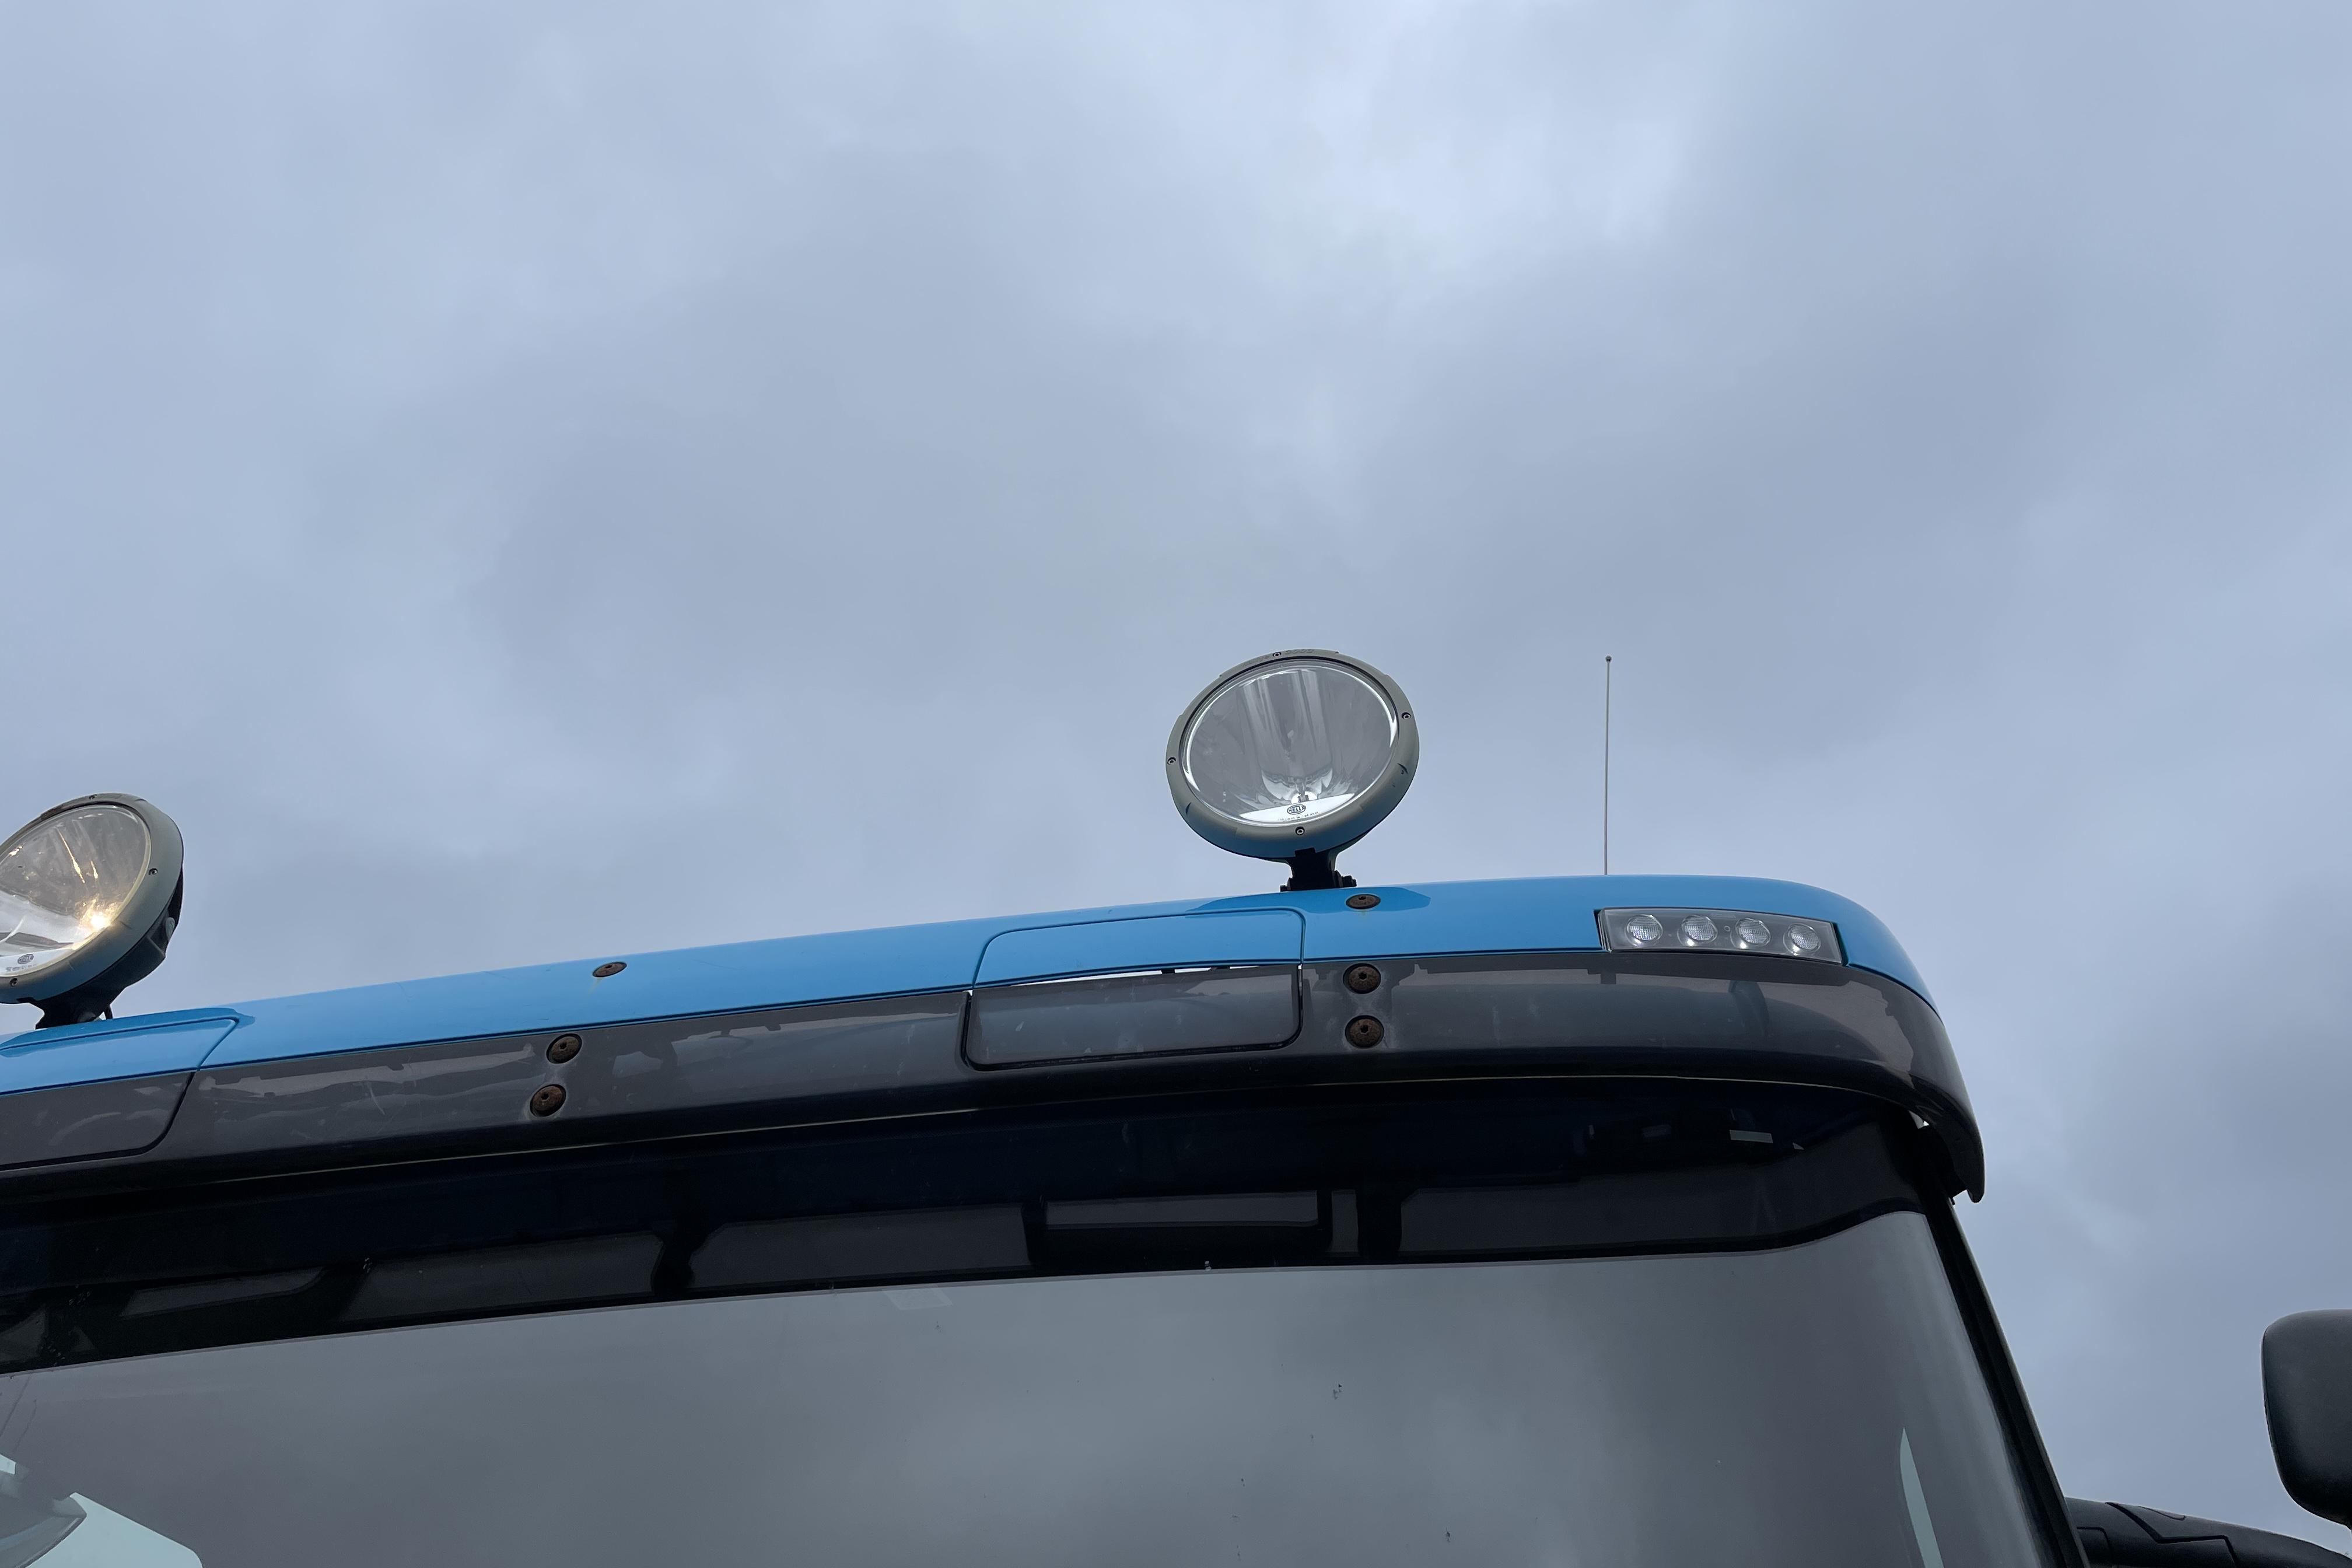 Scania P230 - 697 208 km - Automatyczna - niebieski - 2013